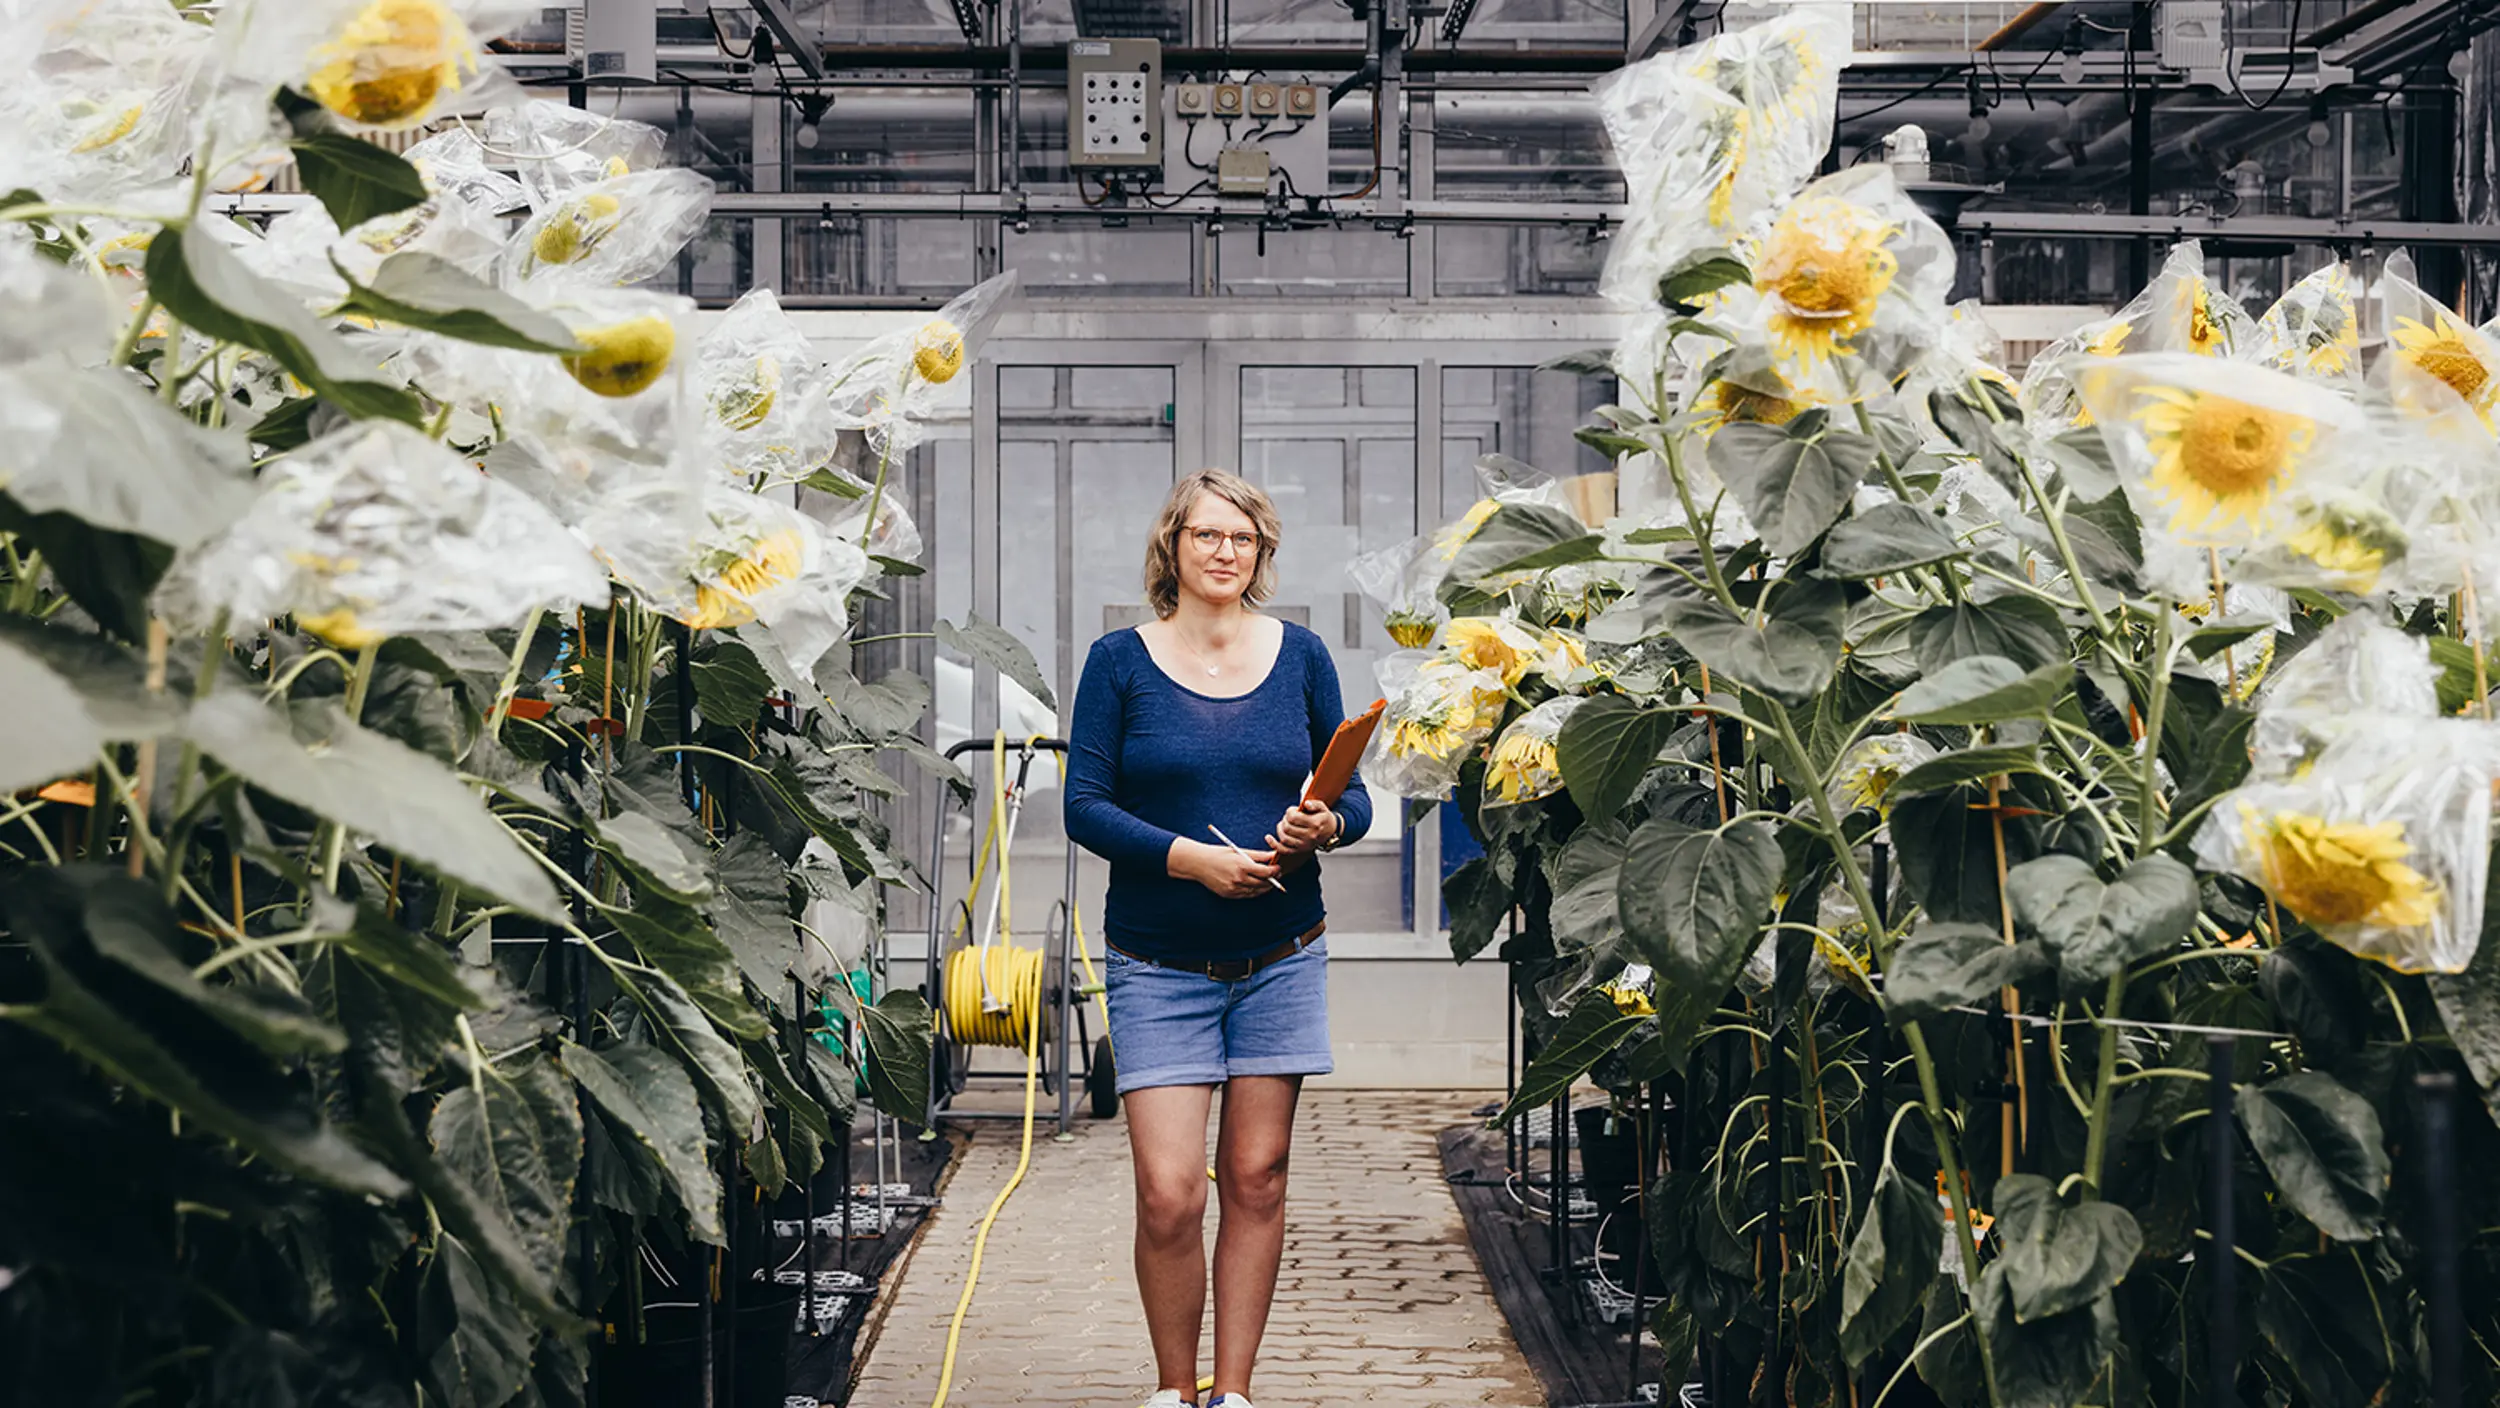 Eine KWS-Mitarbeiterin geht an ihrem Arbeitsplatz in der Aufzucht von Sonnenblumen durch die Pflanzenreihen